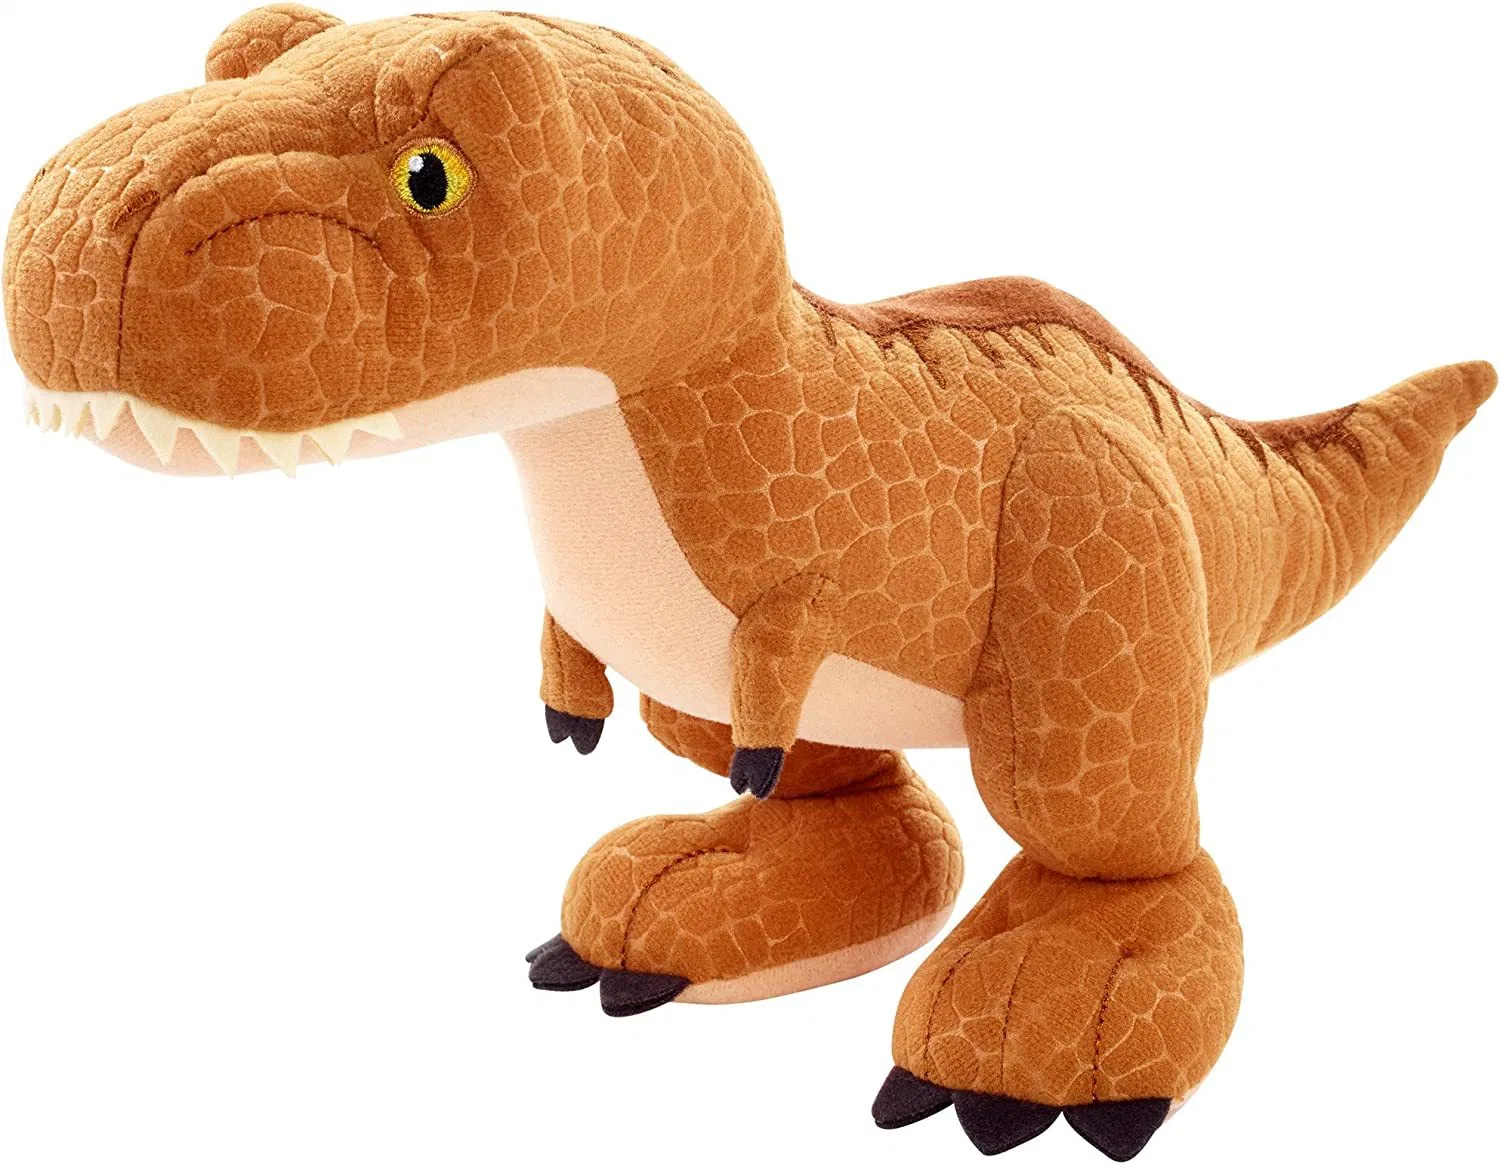 Novo Design Dinosaur pesados recheadas de pelúcia brinquedos para crianças